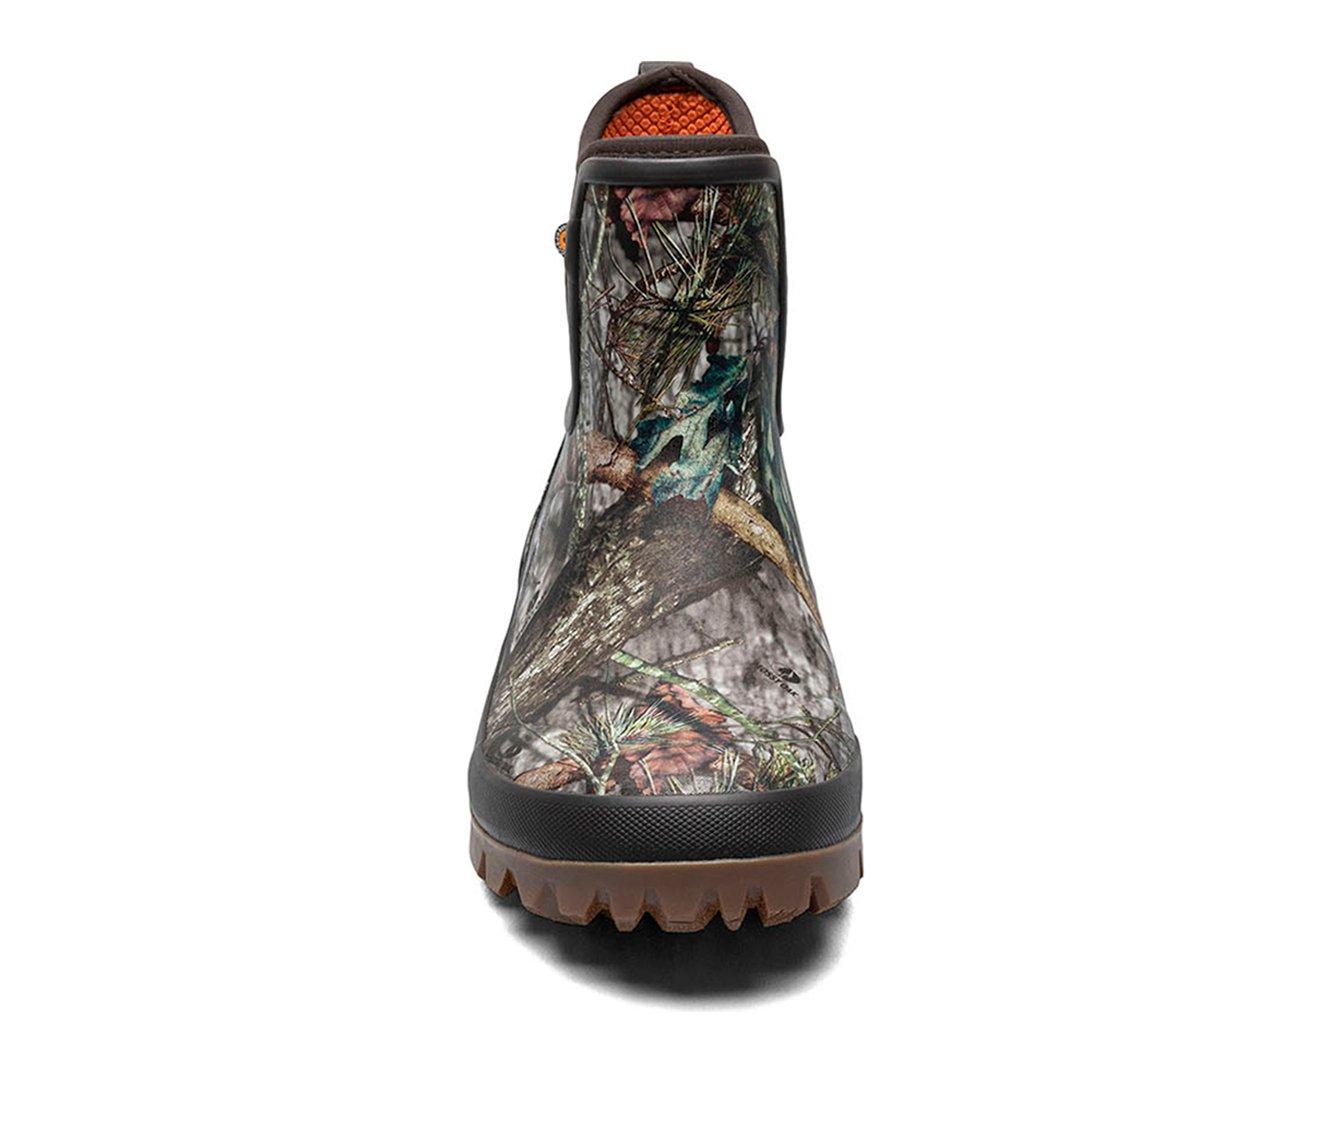 Men's Bogs Footwear Arcata Chelsea Camo Chelsea Winter Boots